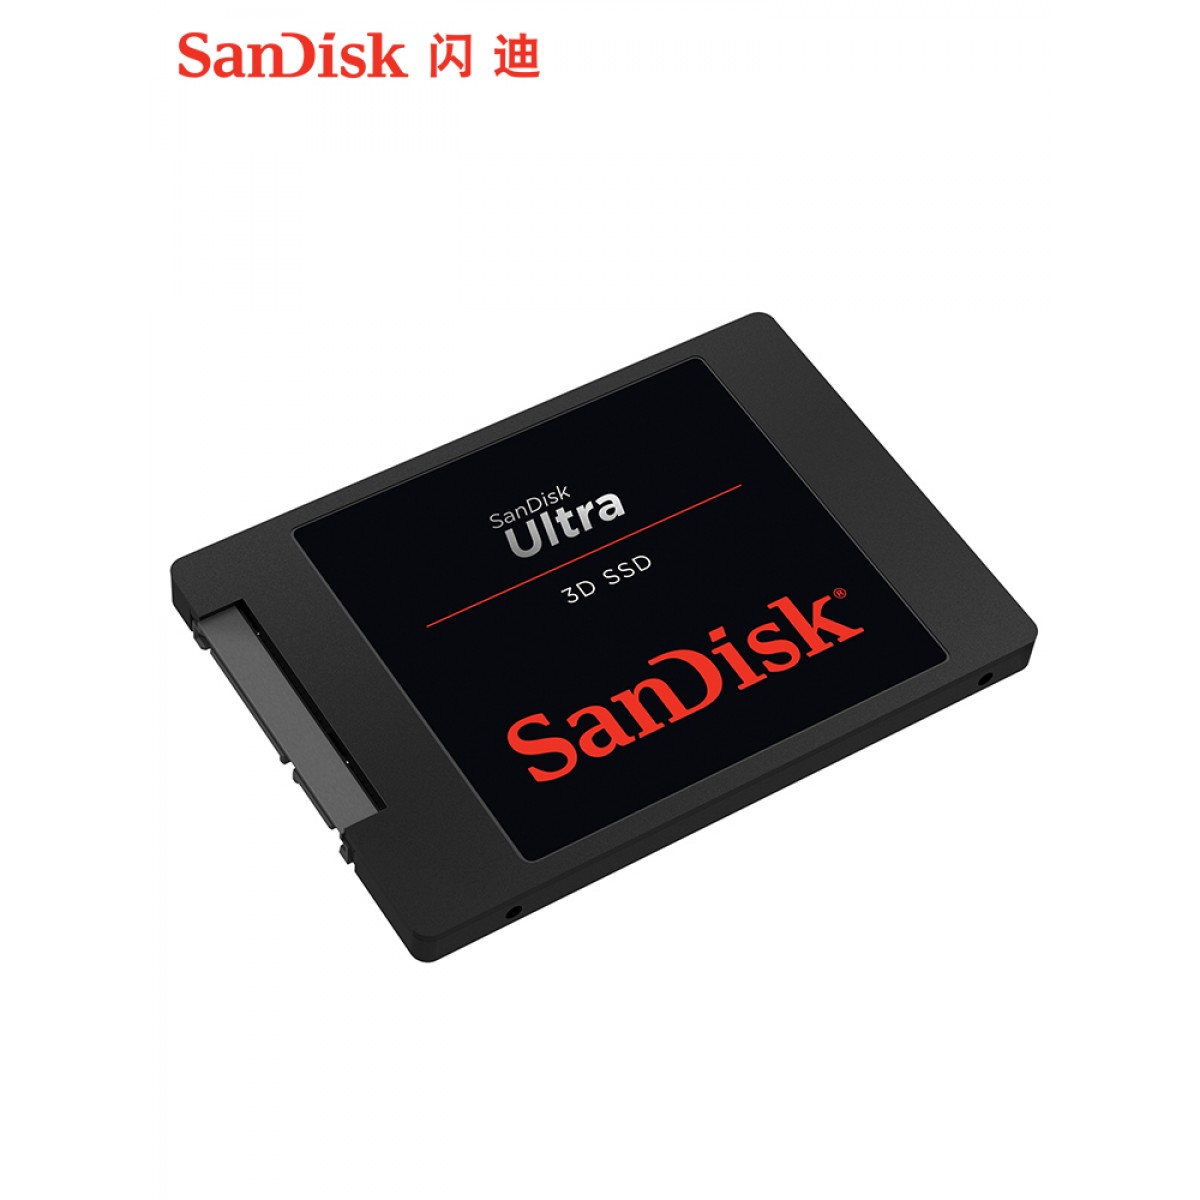 Sandisk/闪迪 SDSSDH3-500G SSD固态硬500G笔记本台式固态硬固盘